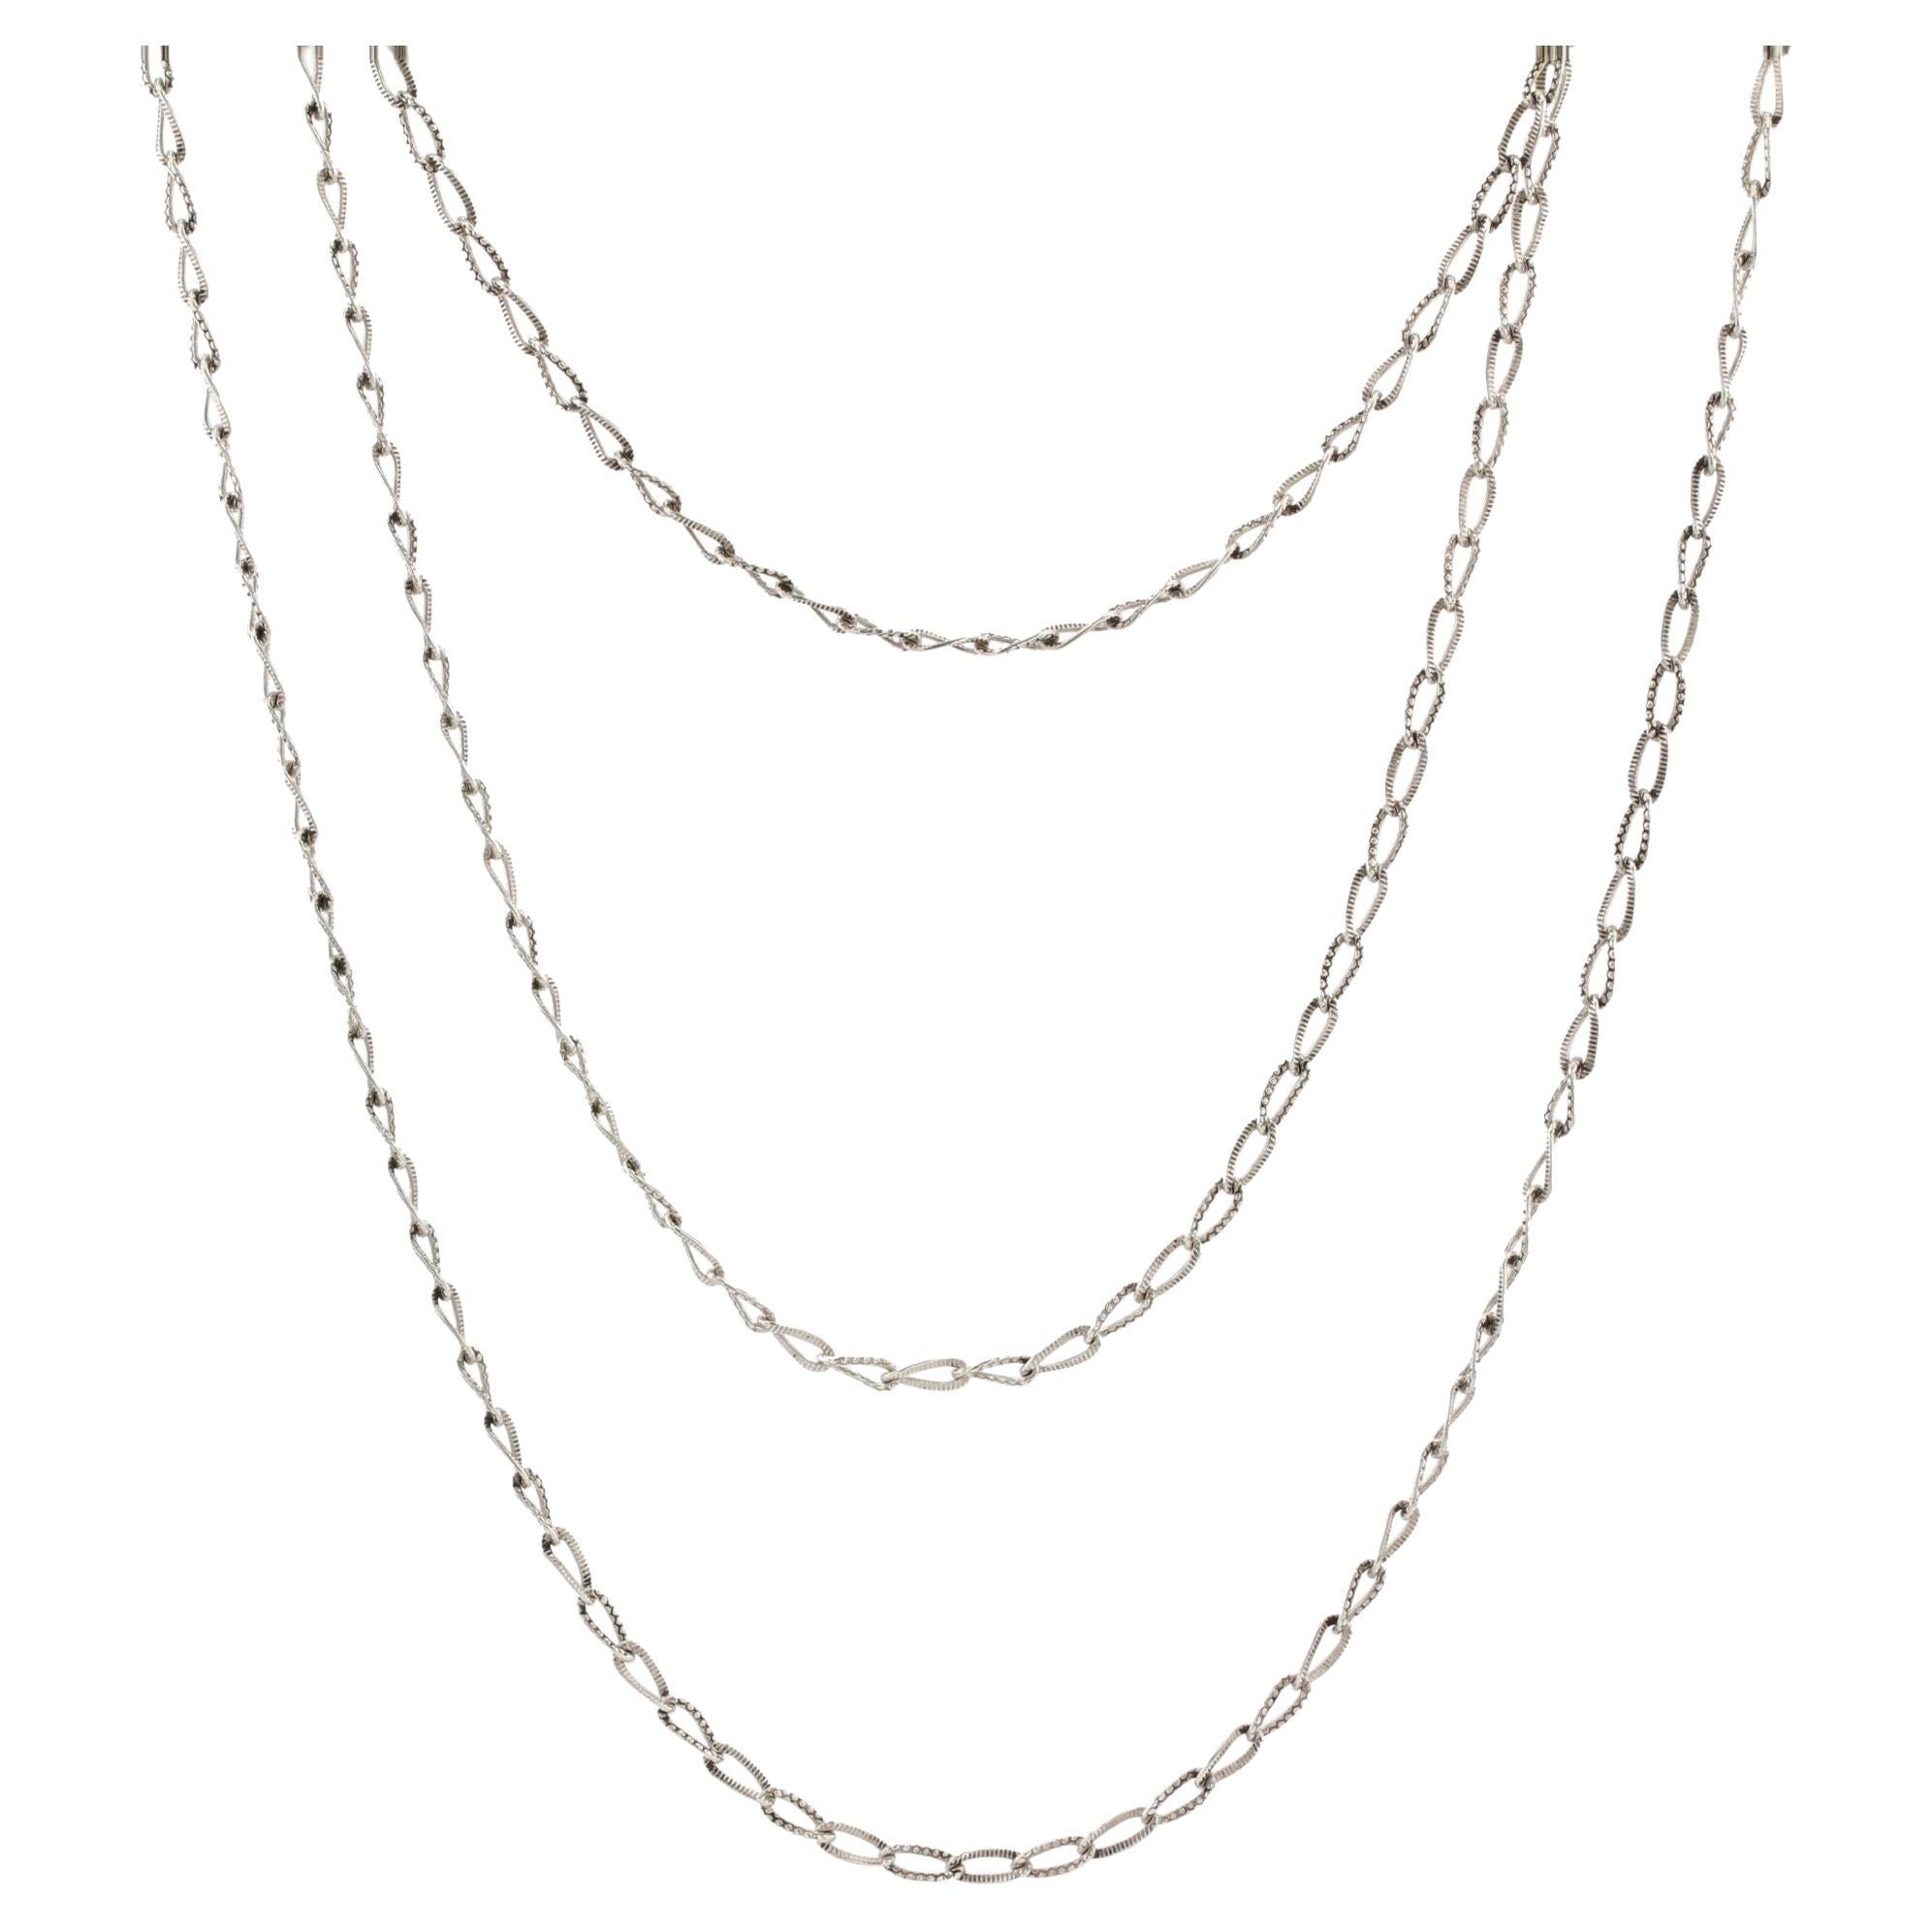 1900s gemeißelt Silber lange Kette Halskette